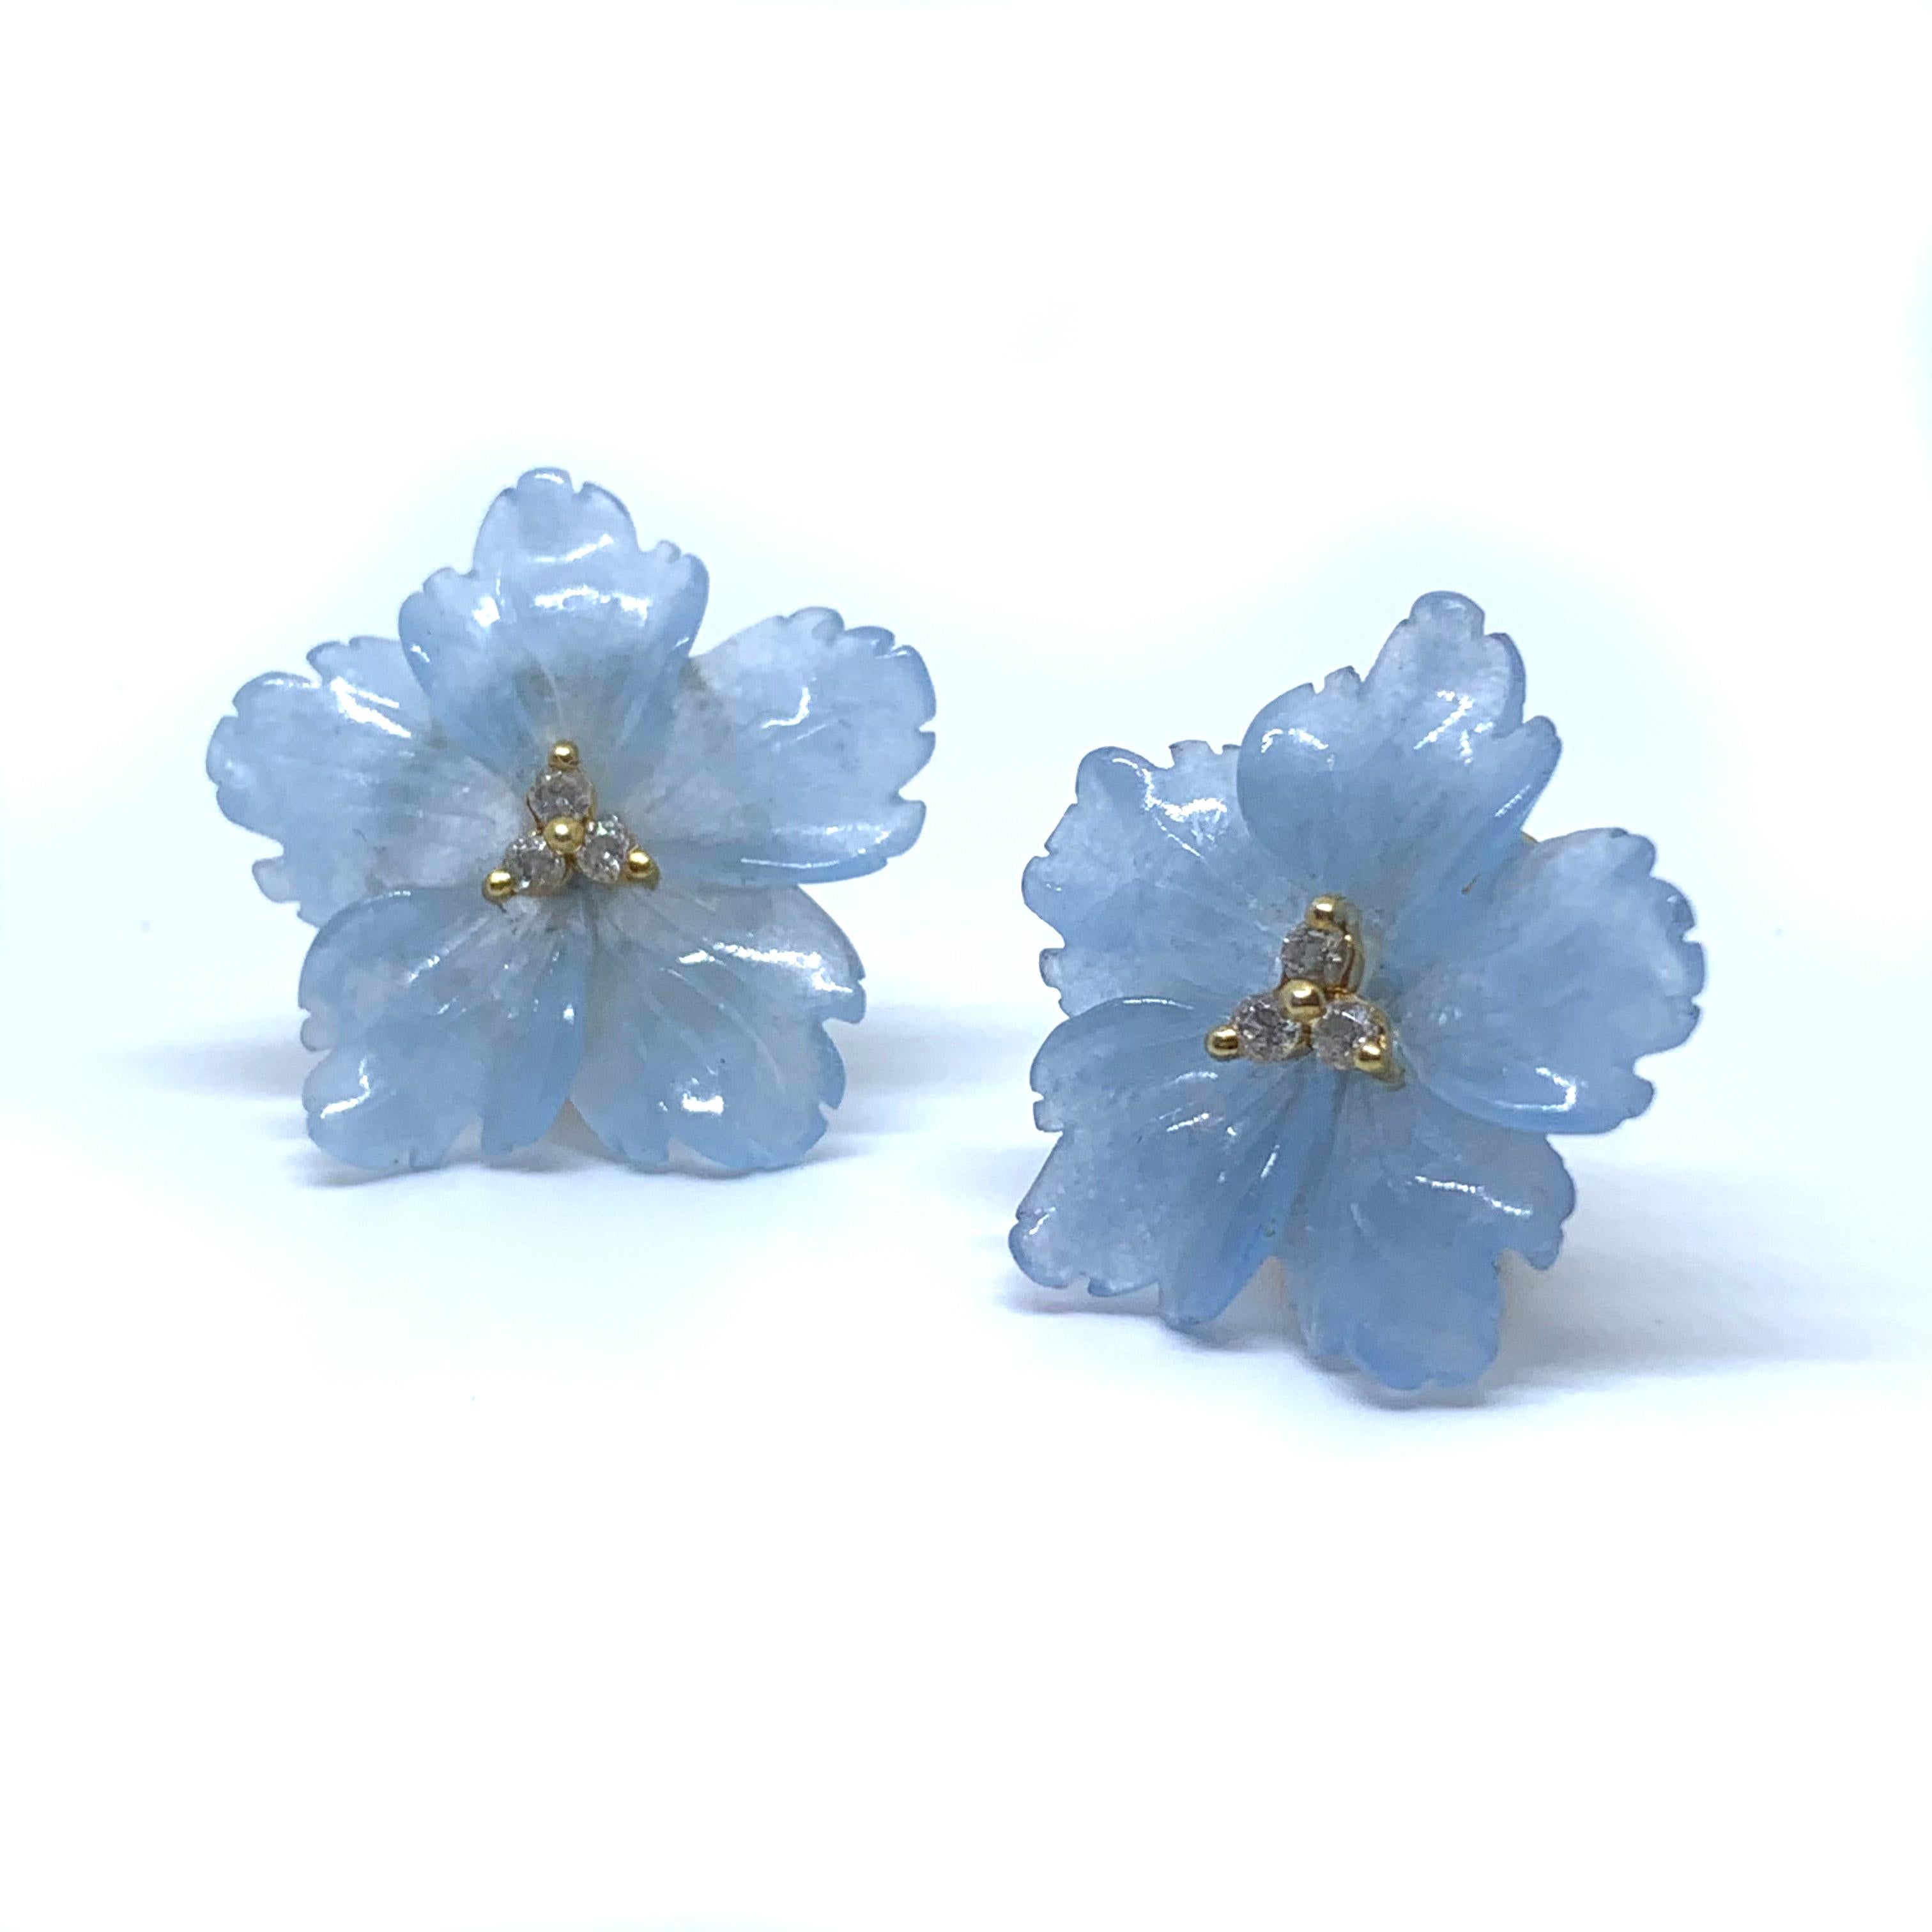 Boucles d'oreilles élégantes en vermeil avec fleurs en quartzite bleu sculpté, 24 mm

Cette magnifique paire de boucles d'oreilles présente un quartzite bleu de 24 mm sculpté en une magnifique fleur en 3D, orné de diamants simulés ronds au centre,